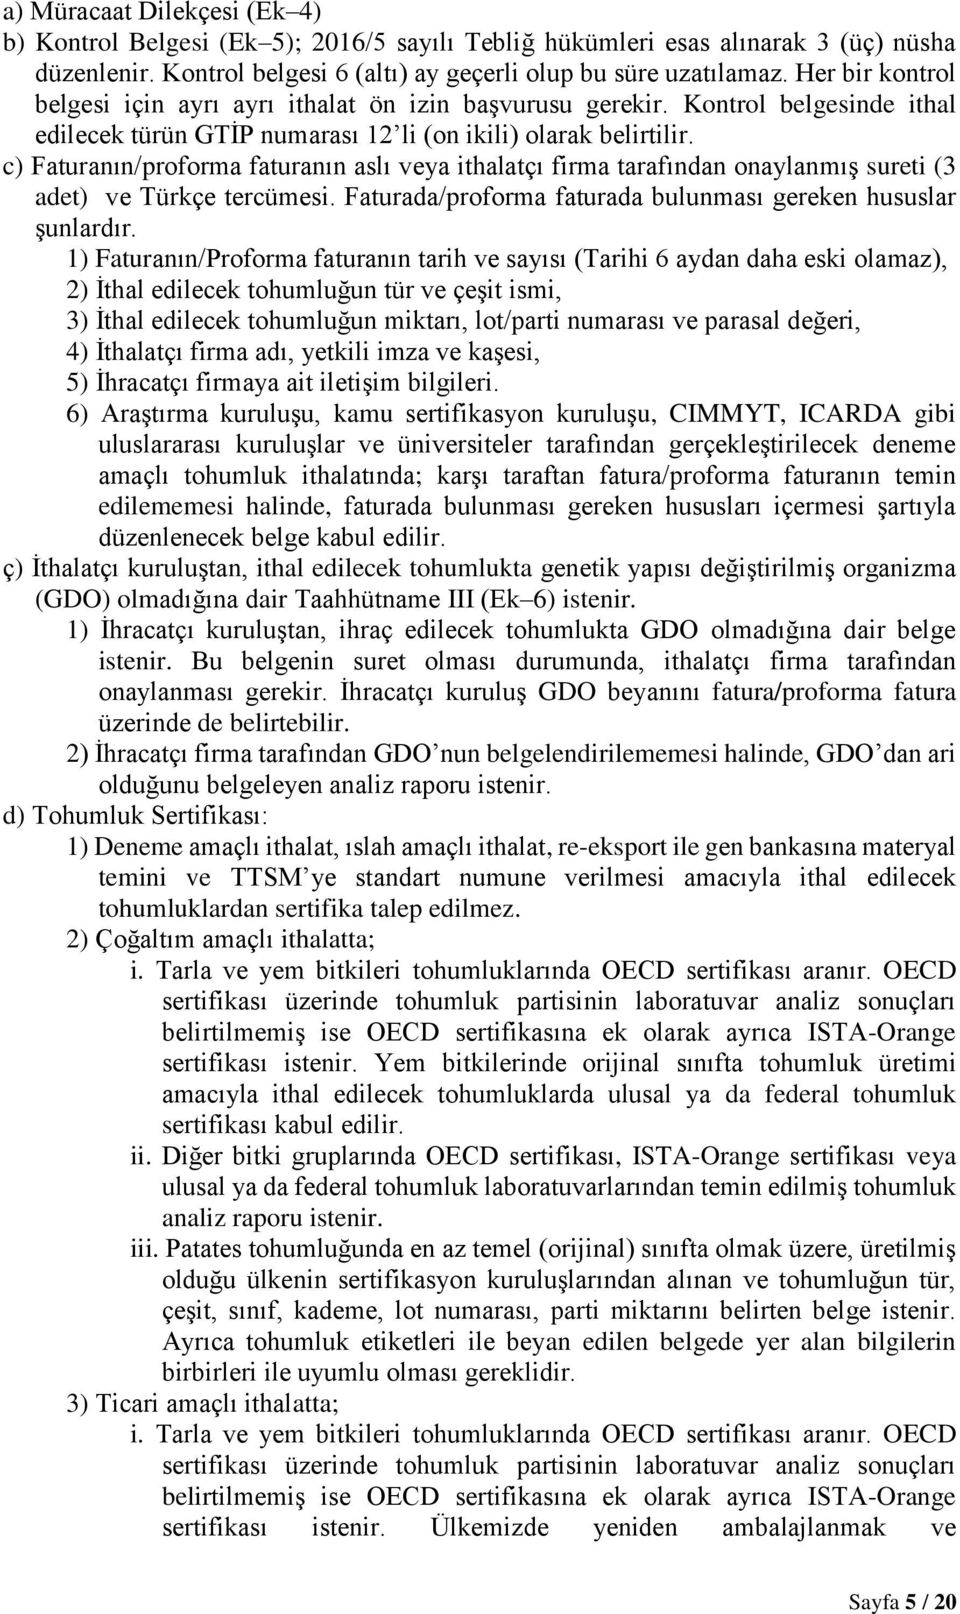 c) Faturanın/proforma faturanın aslı veya ithalatçı firma tarafından onaylanmış sureti (3 adet) ve Türkçe tercümesi. Faturada/proforma faturada bulunması gereken hususlar şunlardır.